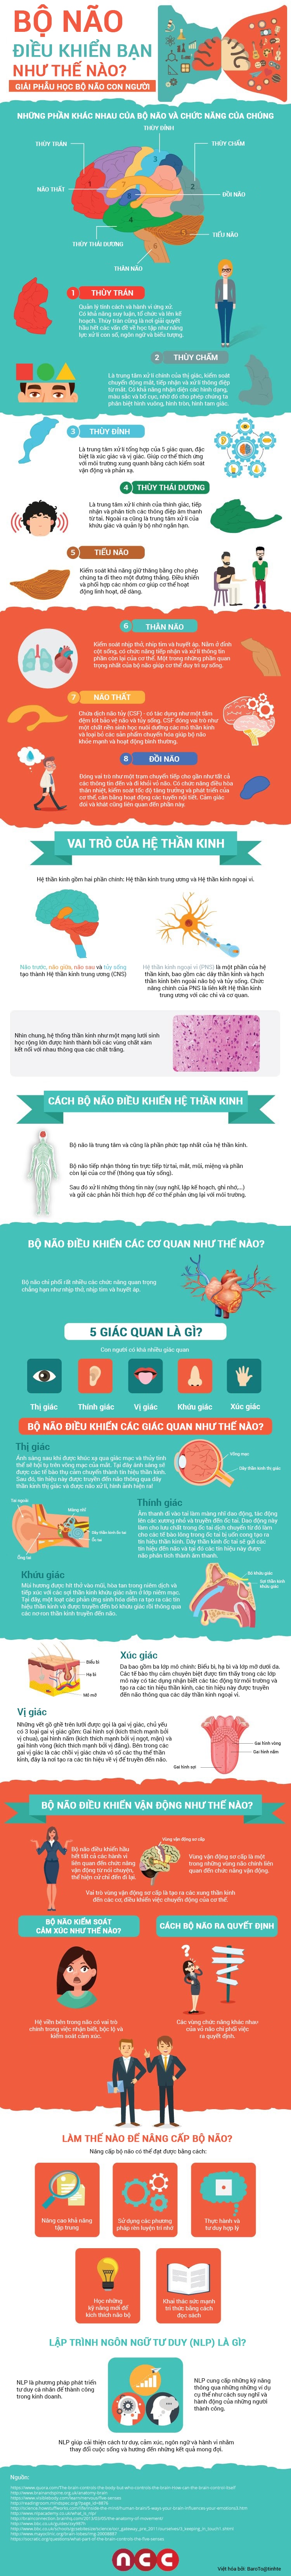 infographic-bo-nao-dieu-khien-co-ban-bang-cach-nao